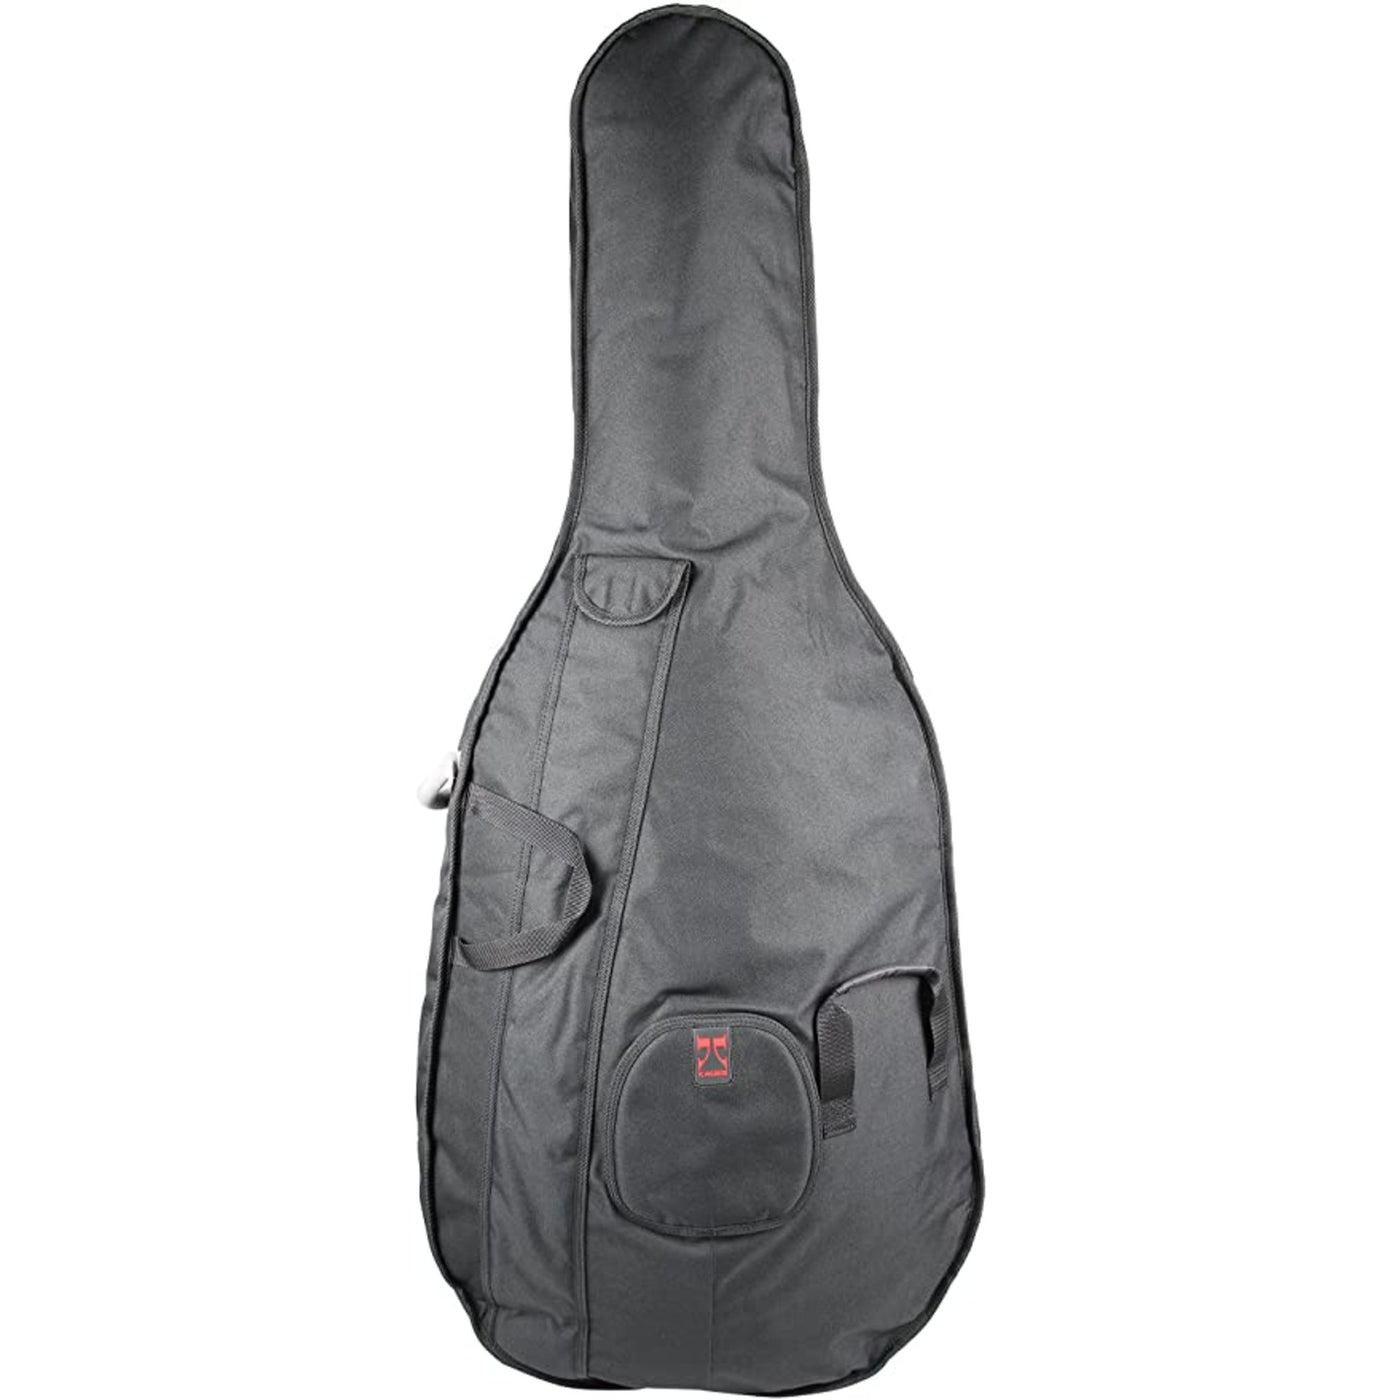 Kaces University Series 1/4 Size Upright Bass Bag